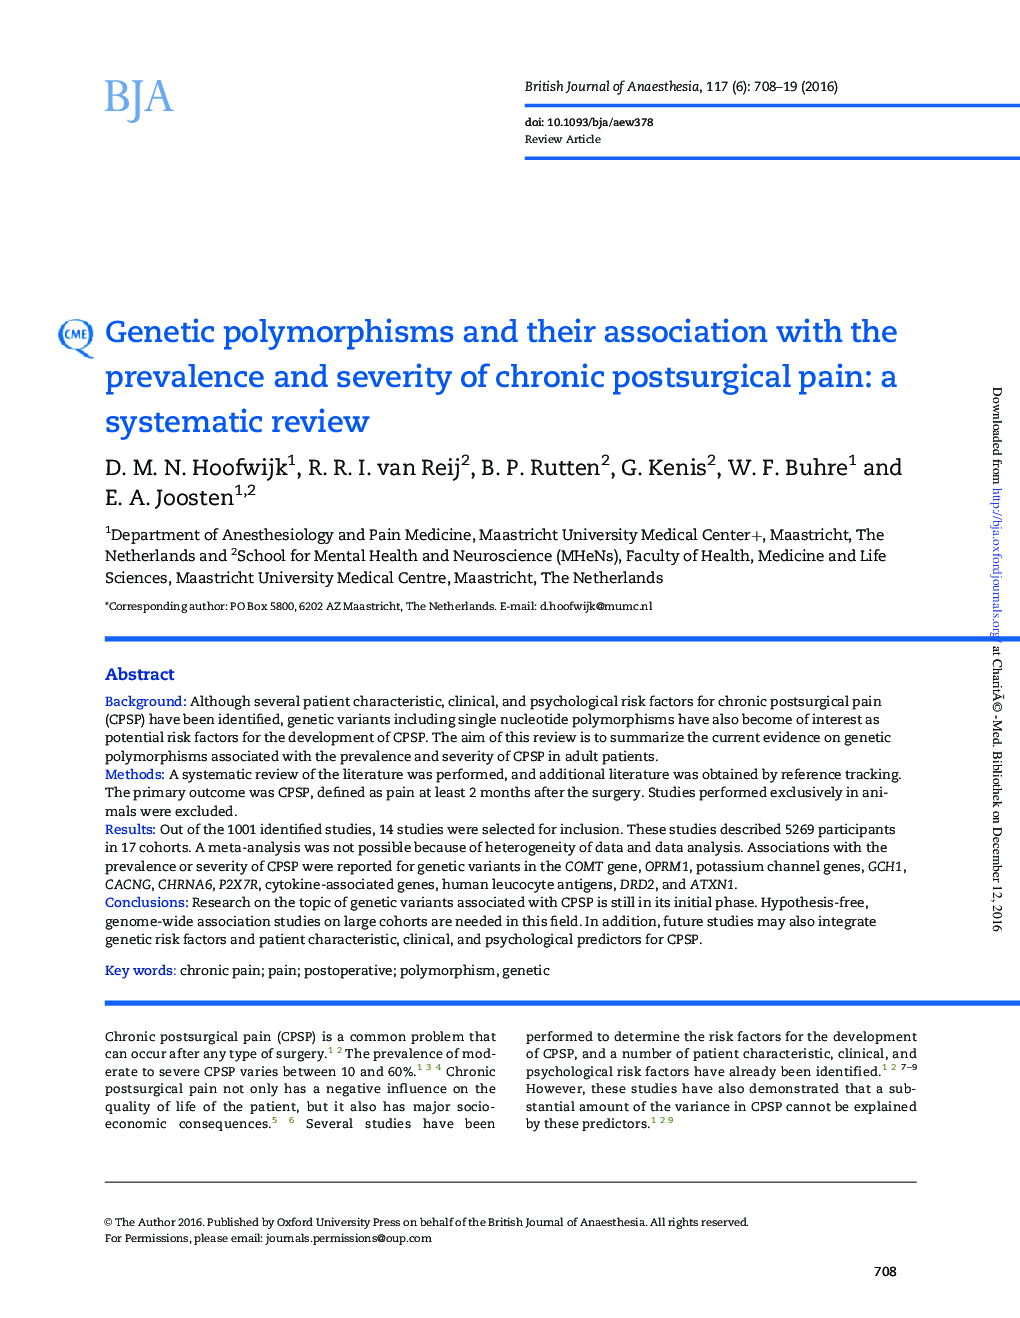 پلیمورفیسم ژنتیکی و ارتباط آن با شیوع و شدت درد پس از عمل جراحی: یک بررسی سیستماتیک 